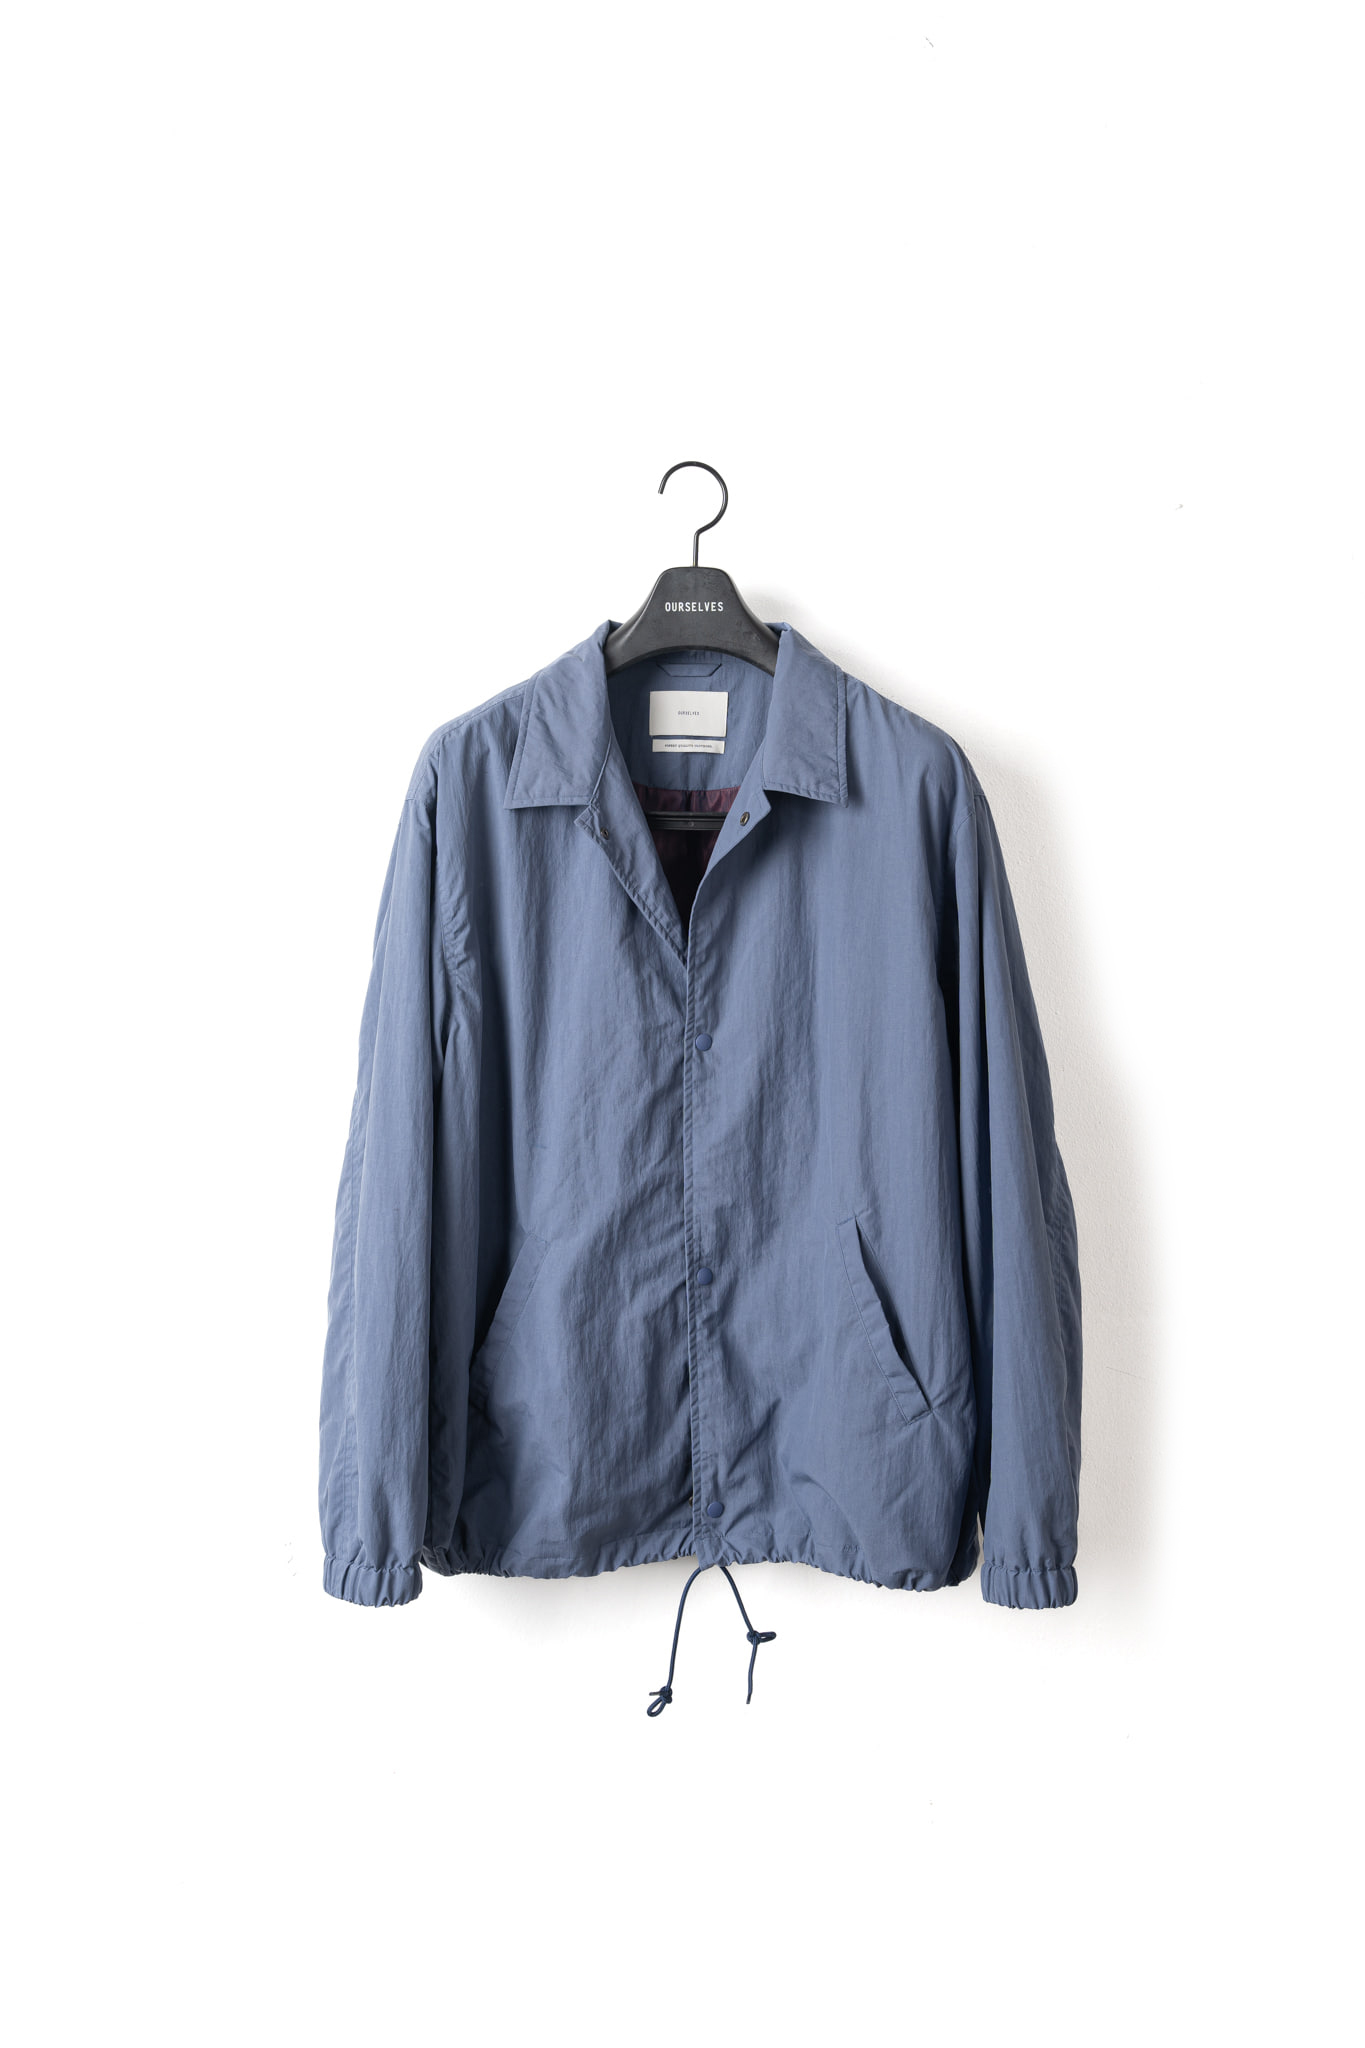 Washed Nylon Coach Jacket - Vintage Blue